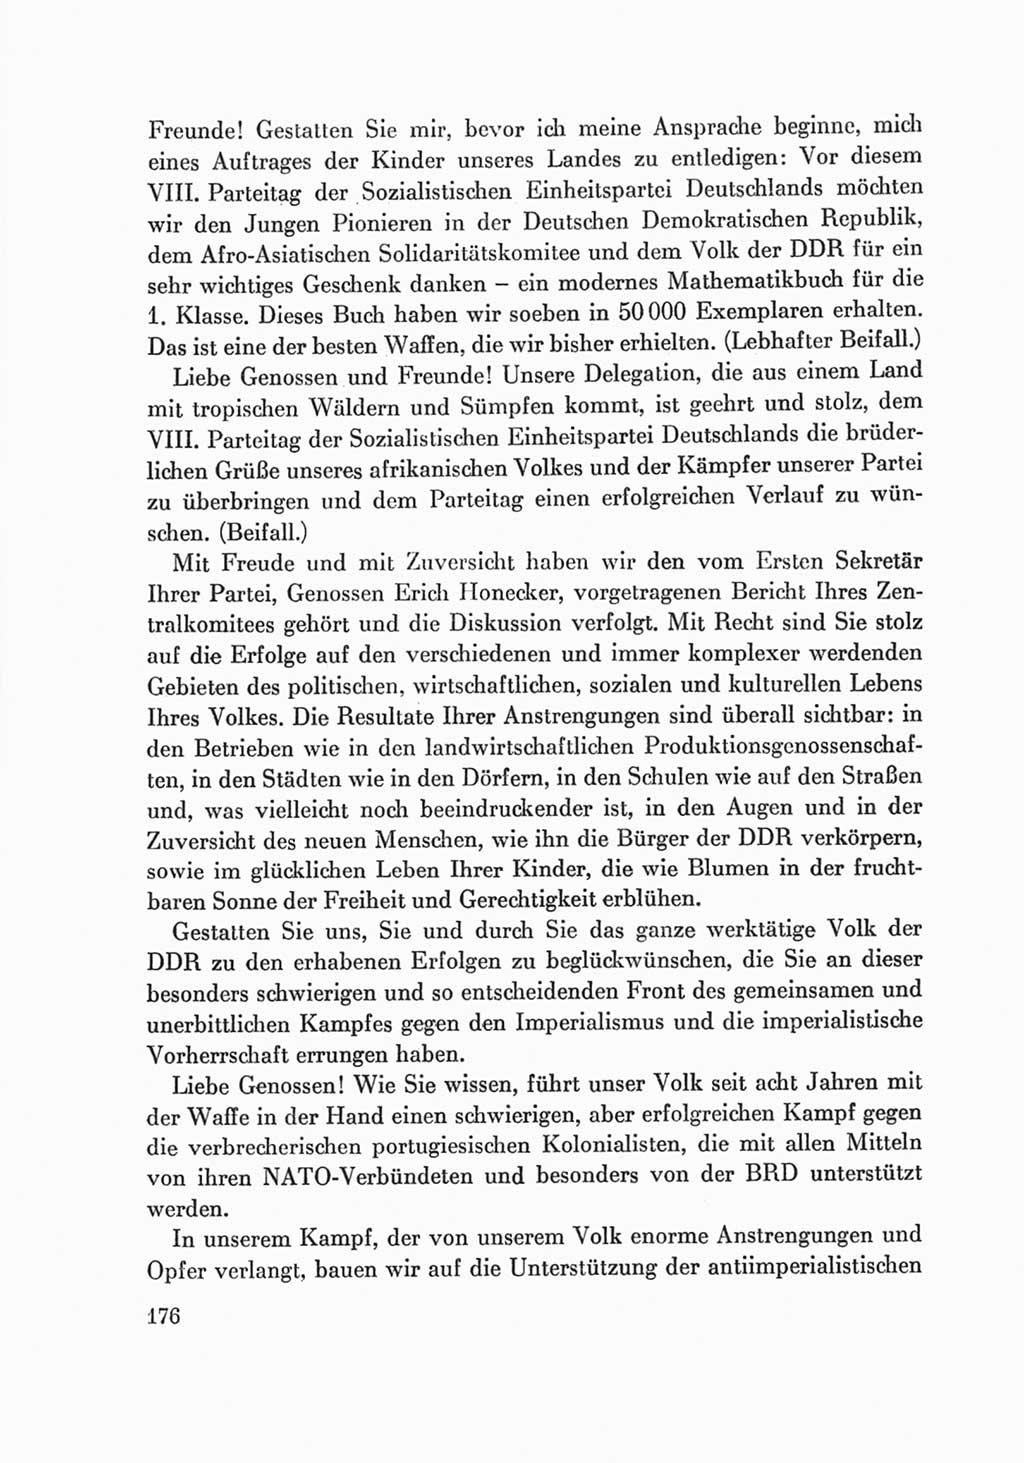 Protokoll der Verhandlungen des Ⅷ. Parteitages der Sozialistischen Einheitspartei Deutschlands (SED) [Deutsche Demokratische Republik (DDR)] 1971, Band 2, Seite 176 (Prot. Verh. Ⅷ. PT SED DDR 1971, Bd. 2, S. 176)